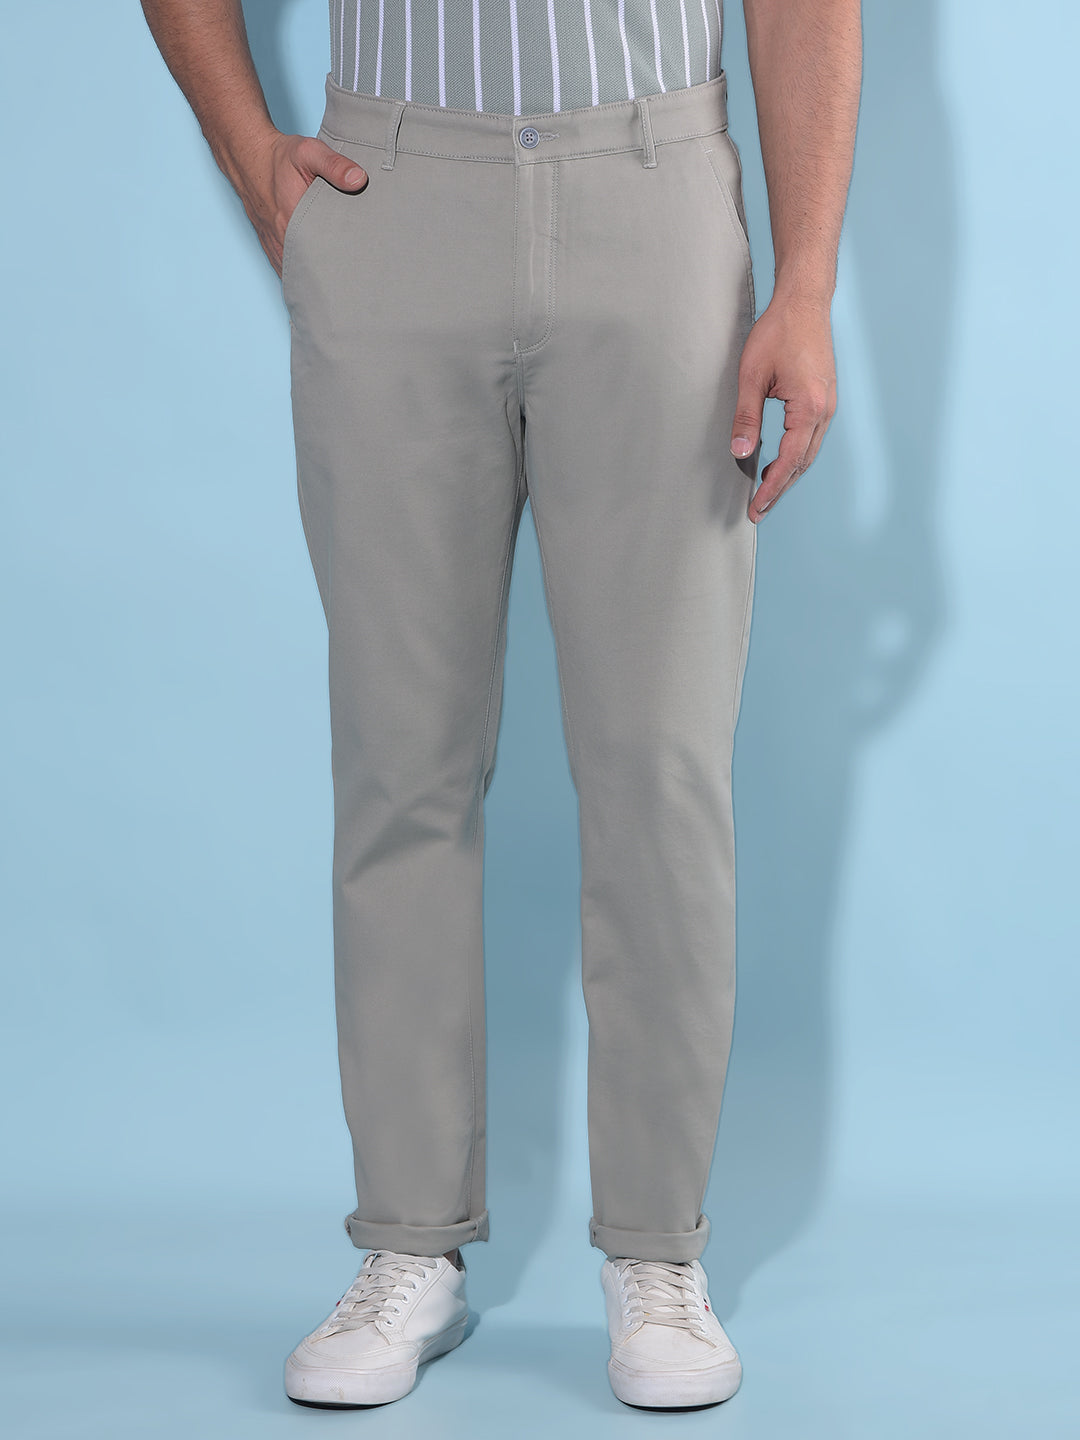 Grey Cotton Trousers-Men Trousers-Crimsoune Club